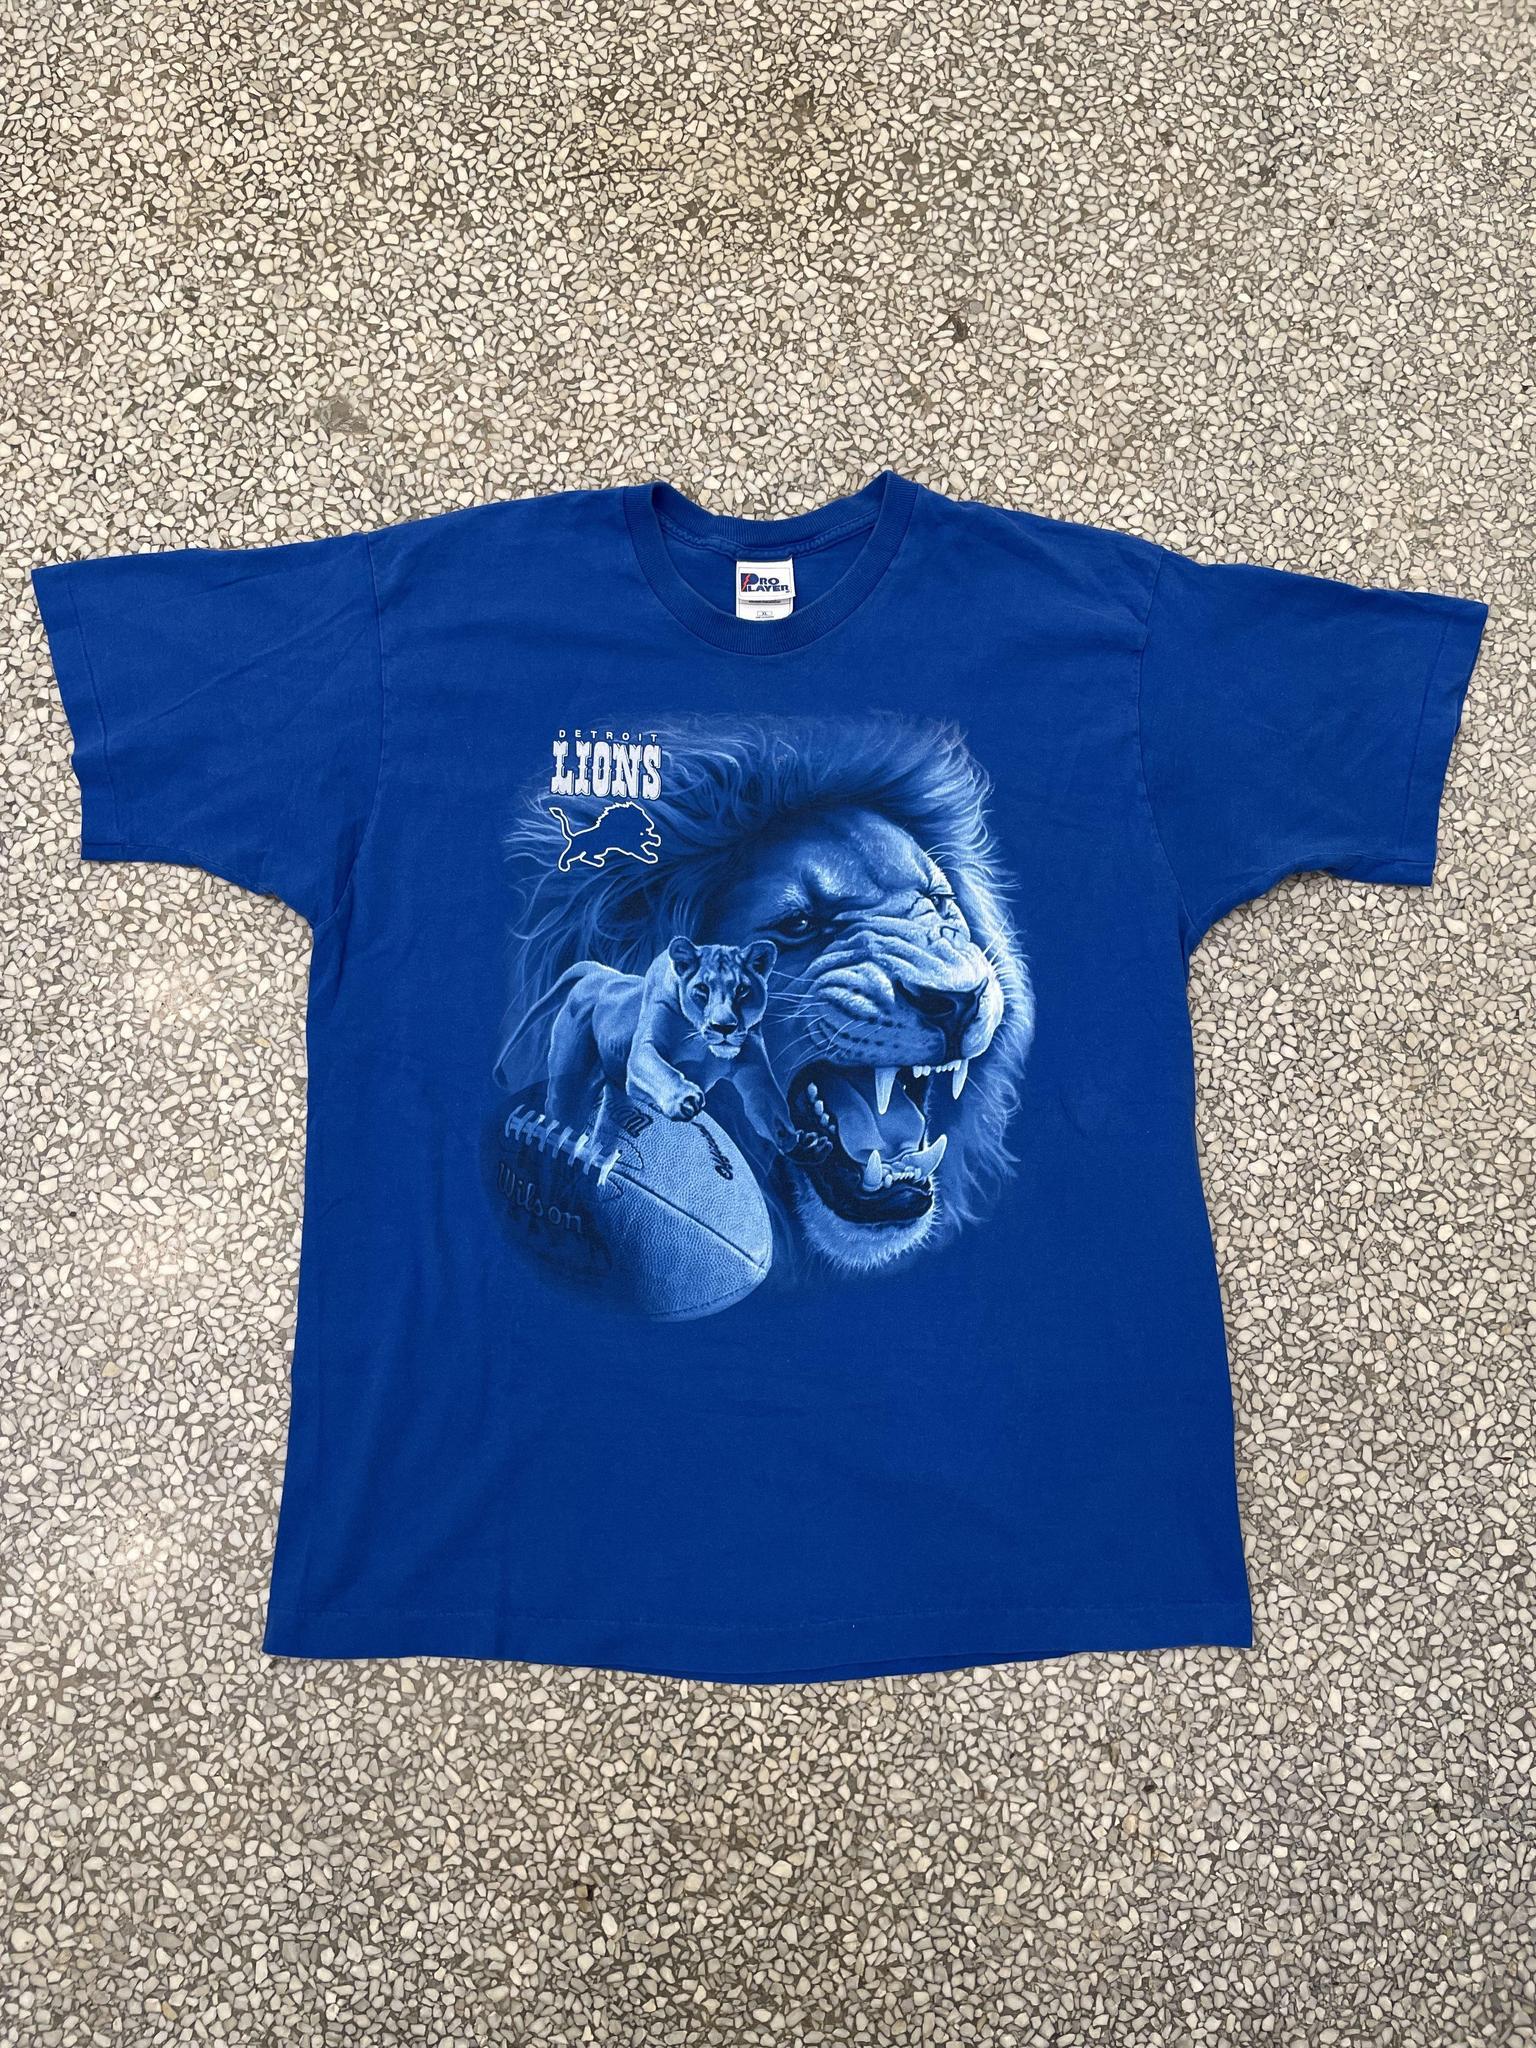 Detroit Lions Vintage 